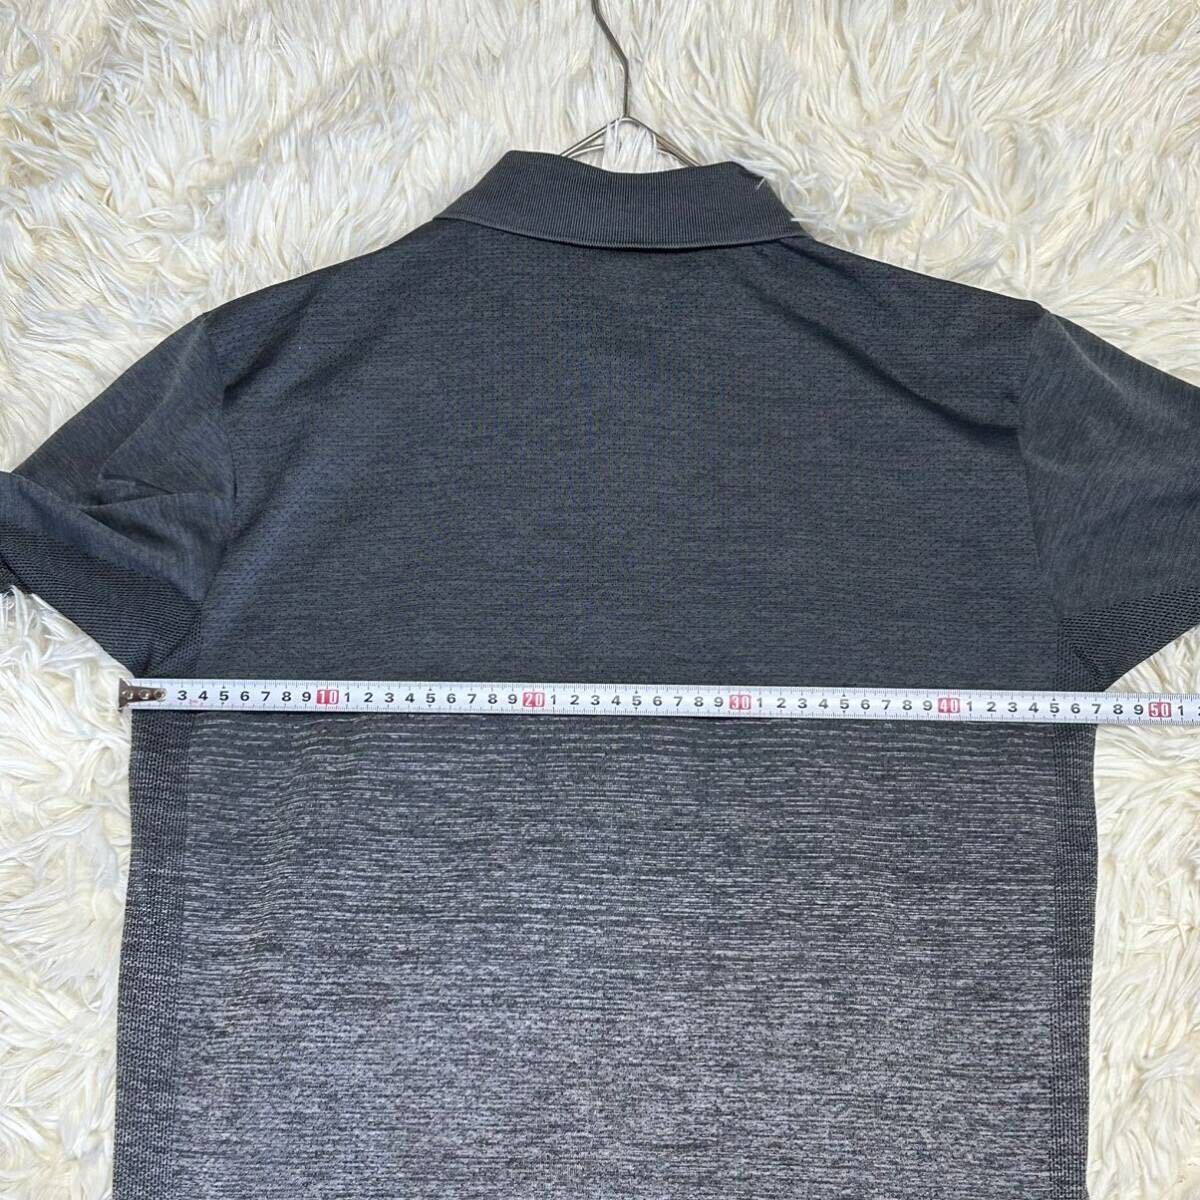  Uniqlo dry EX рубашка-поло M